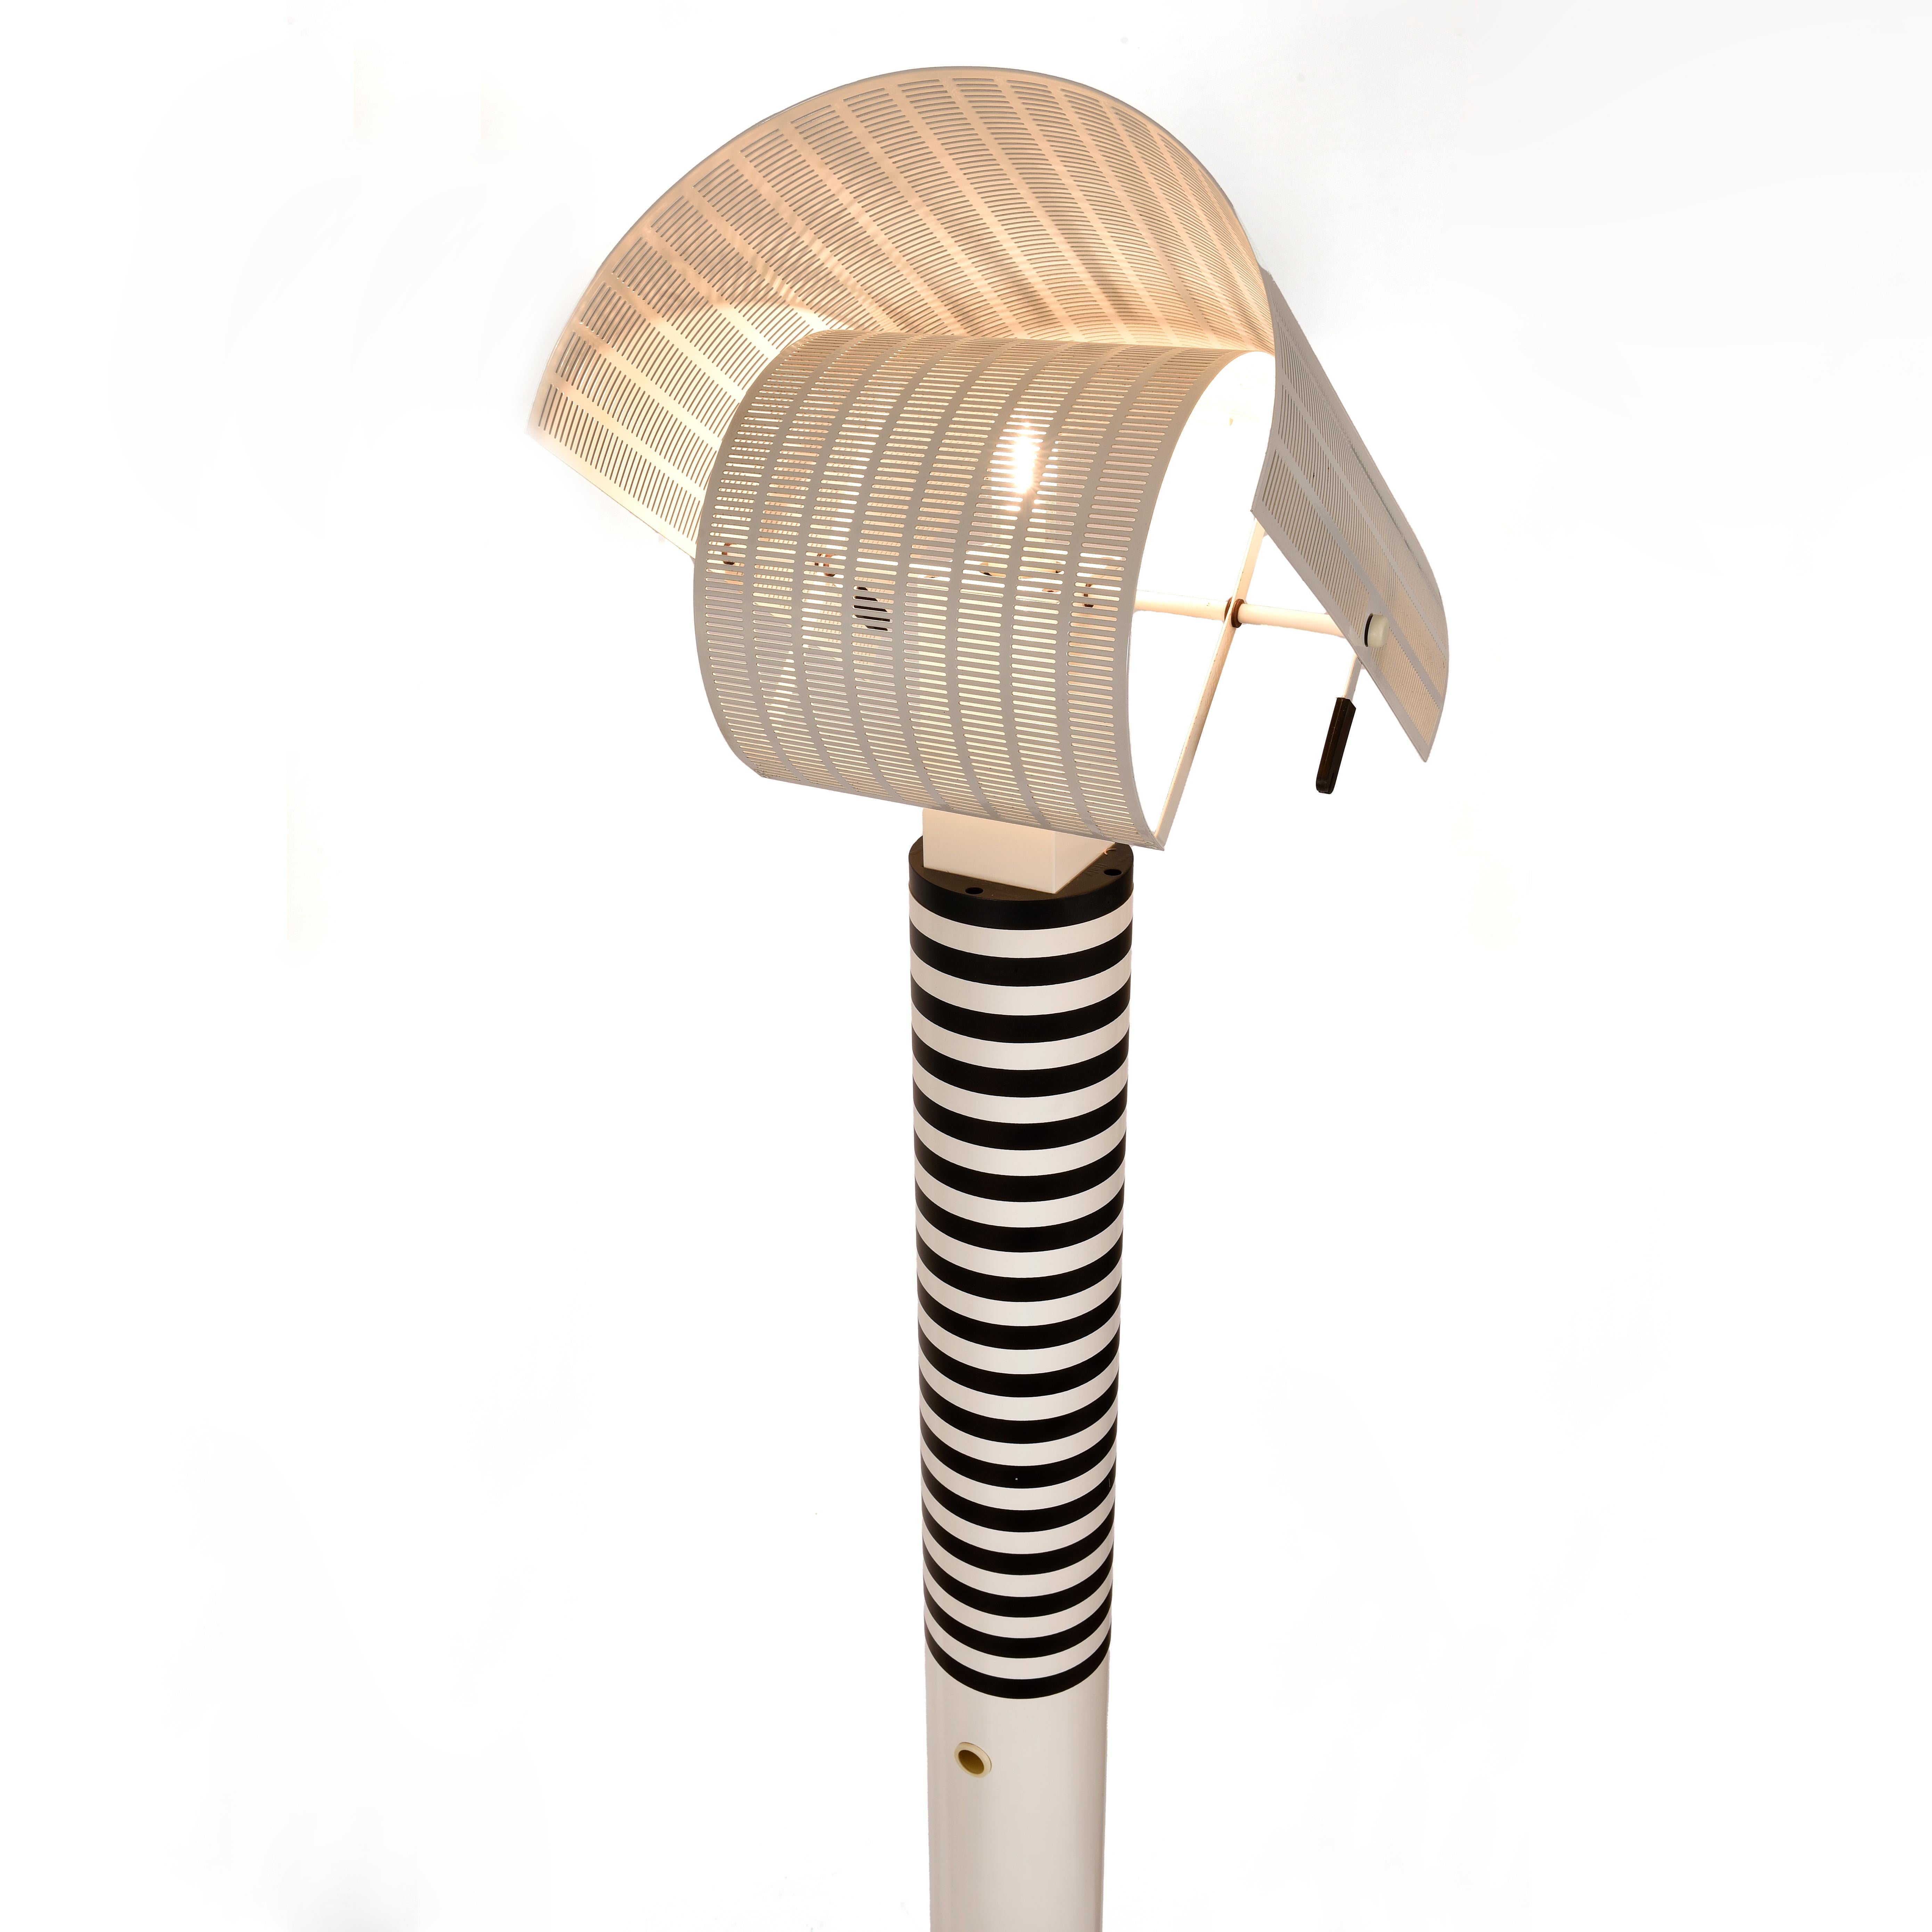 Italian Mario Botta, Shogun Terra Floor Lamp 'circa 1986)' Artemide